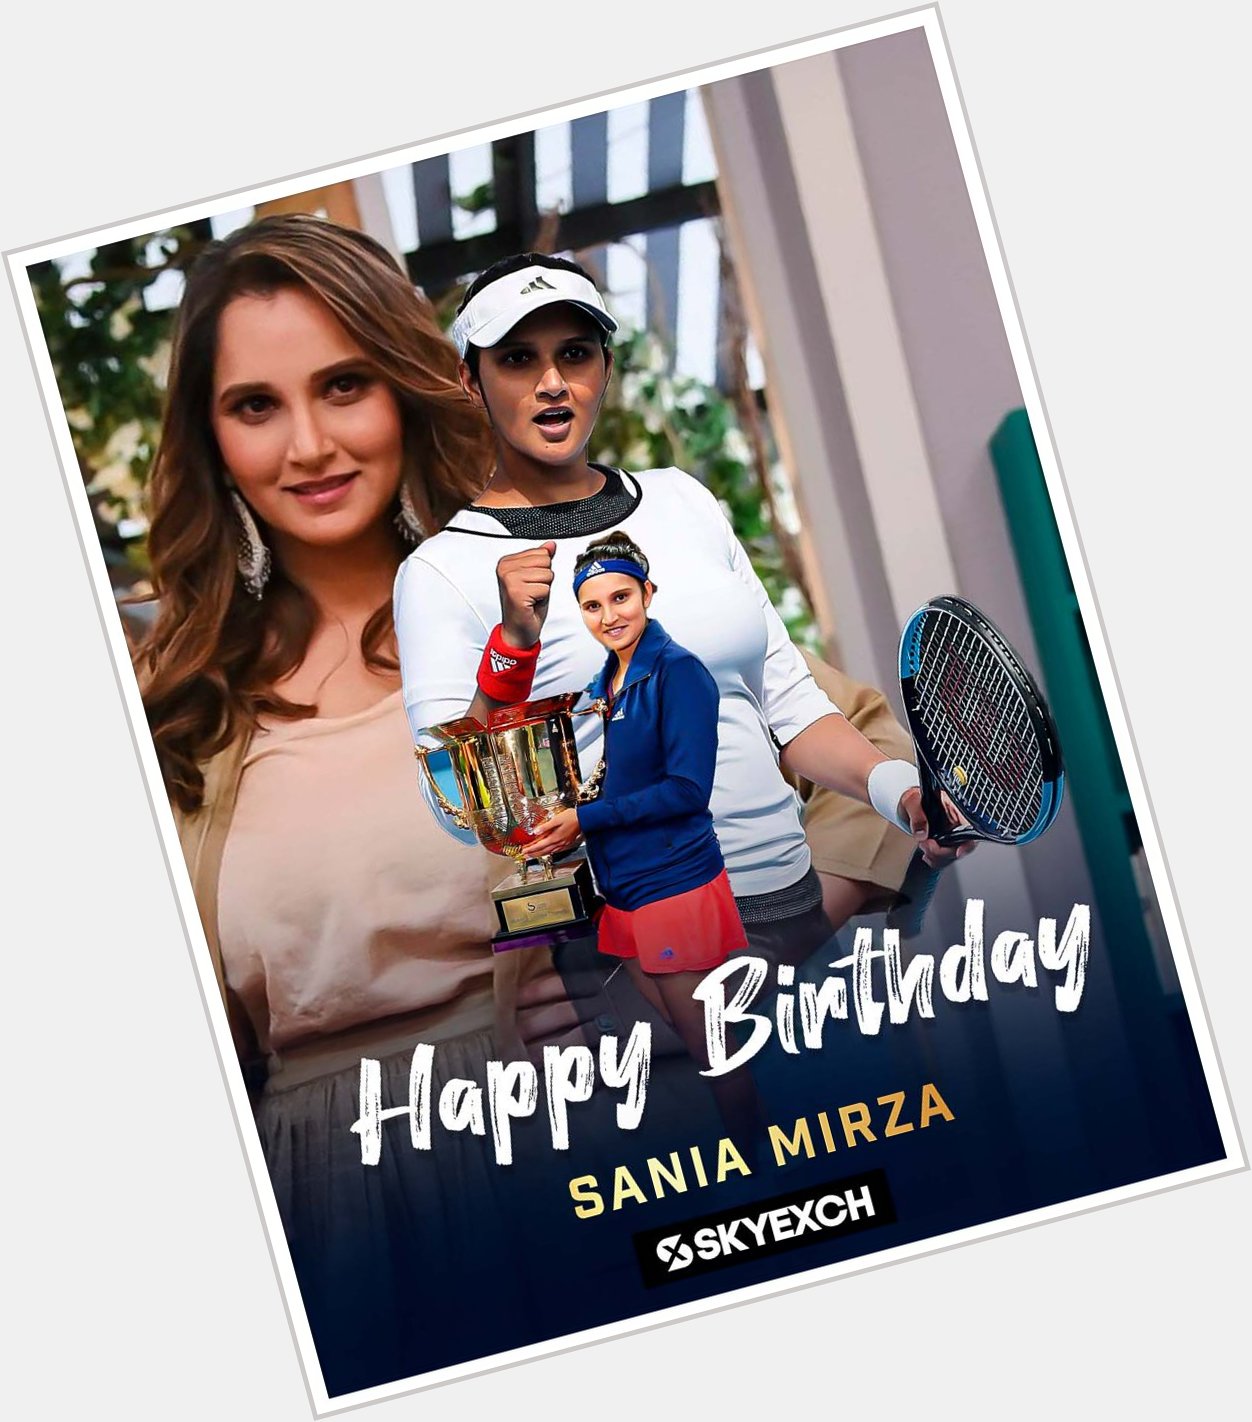 Wishing  Sania Mirza a Very Happy Birthday      